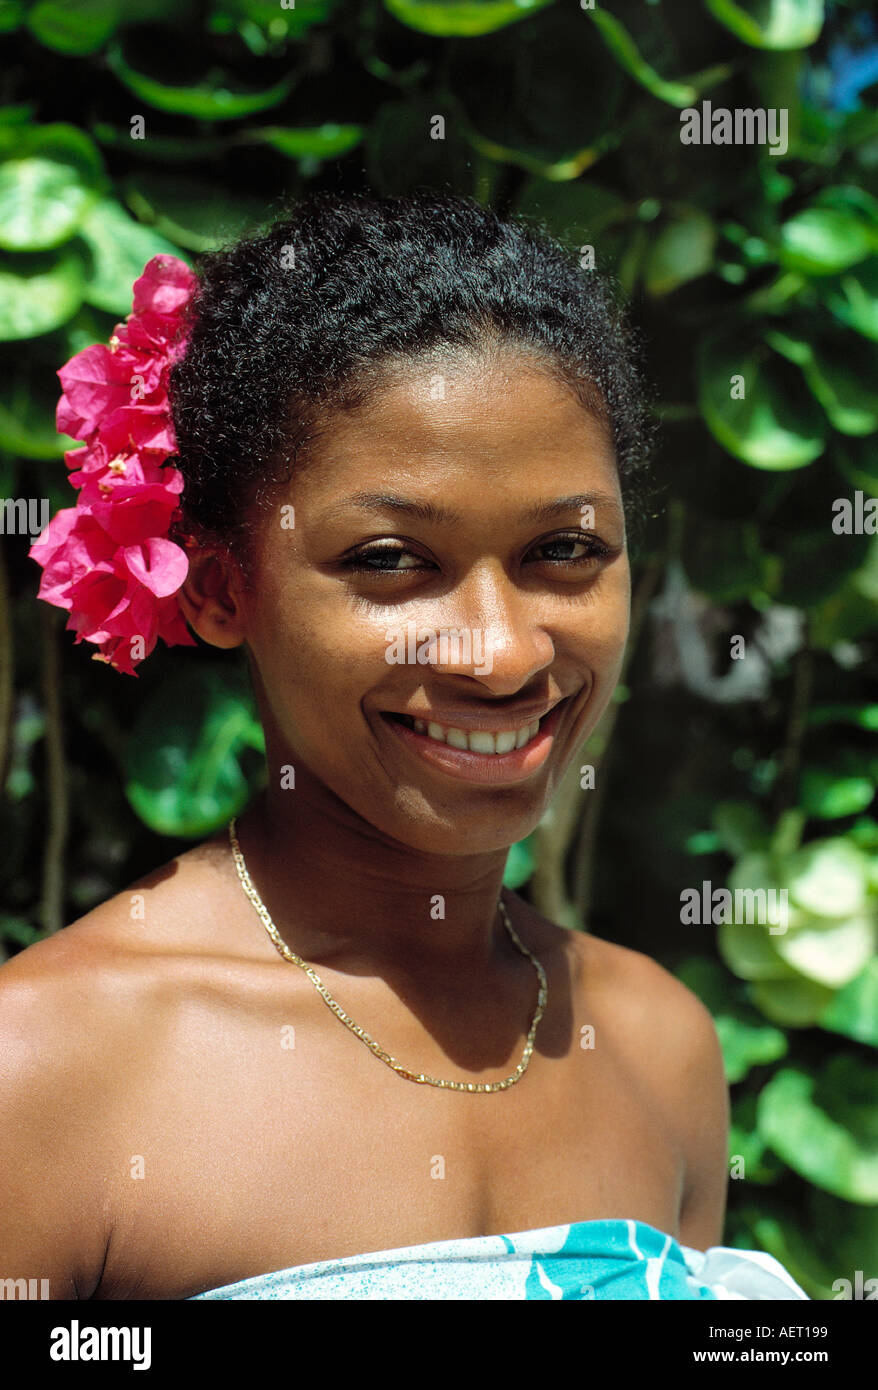 portrait of native woman praslin island seychelles Stock Photo - Alamy